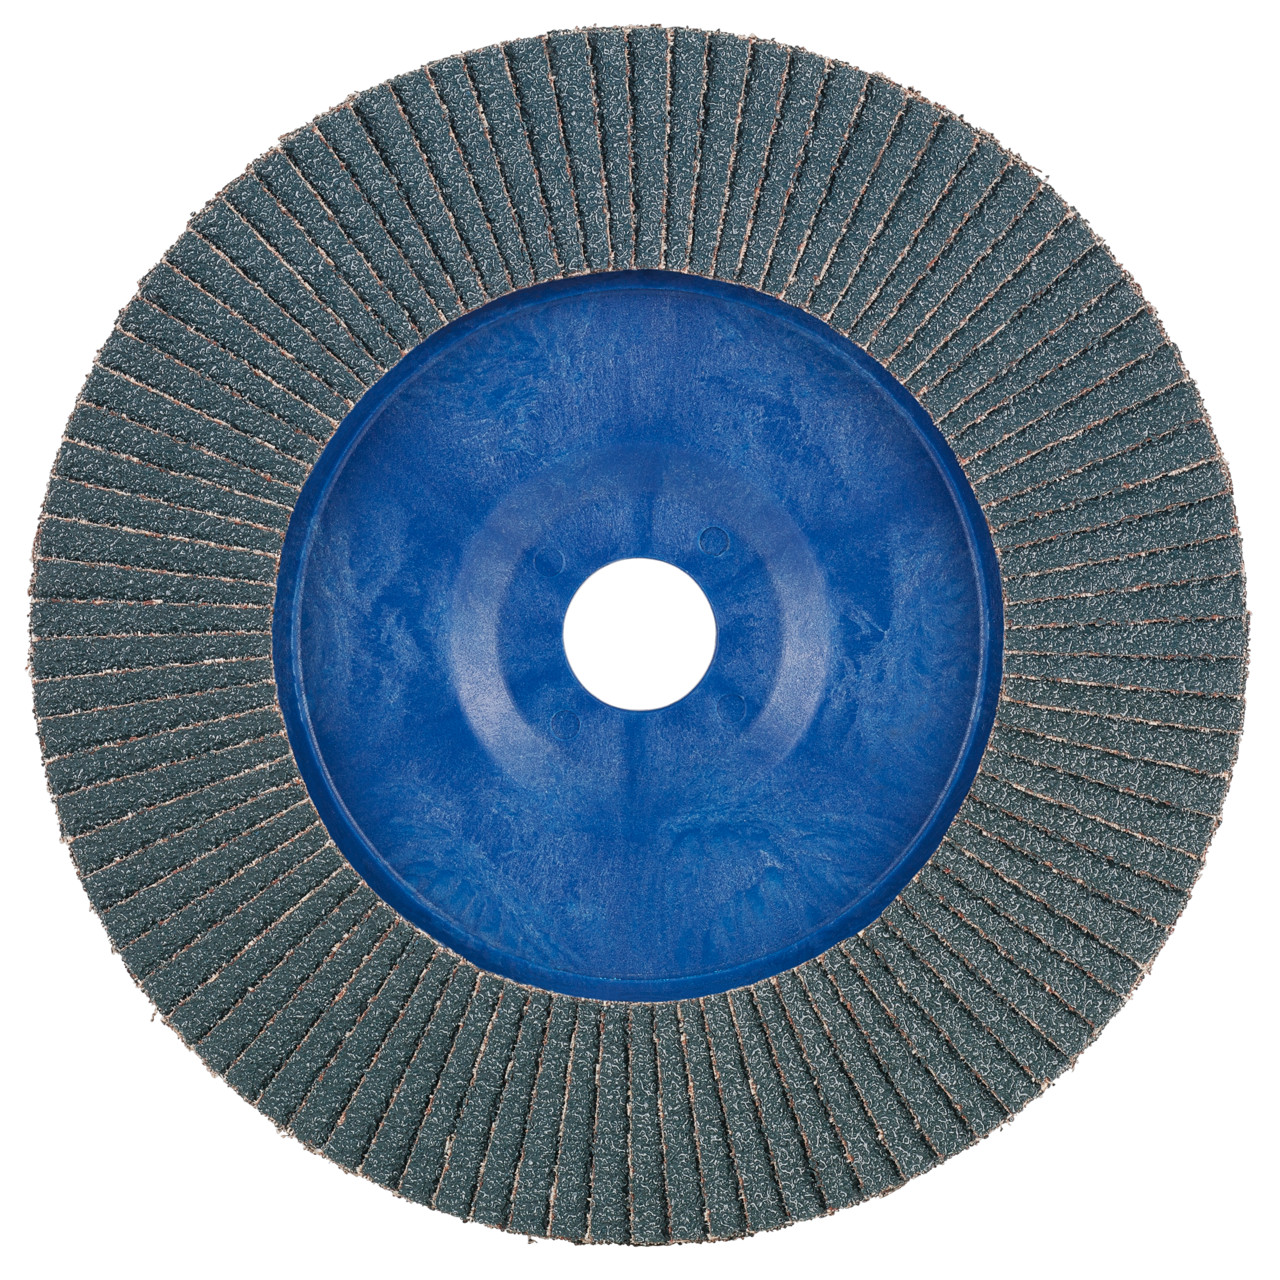 Rondella dentata Tyrolit DxH 125x22.23 2in1 per acciaio e acciaio inox, P60, forma: 28N - versione diritta (corpo portante in plastica), Art. 34318573